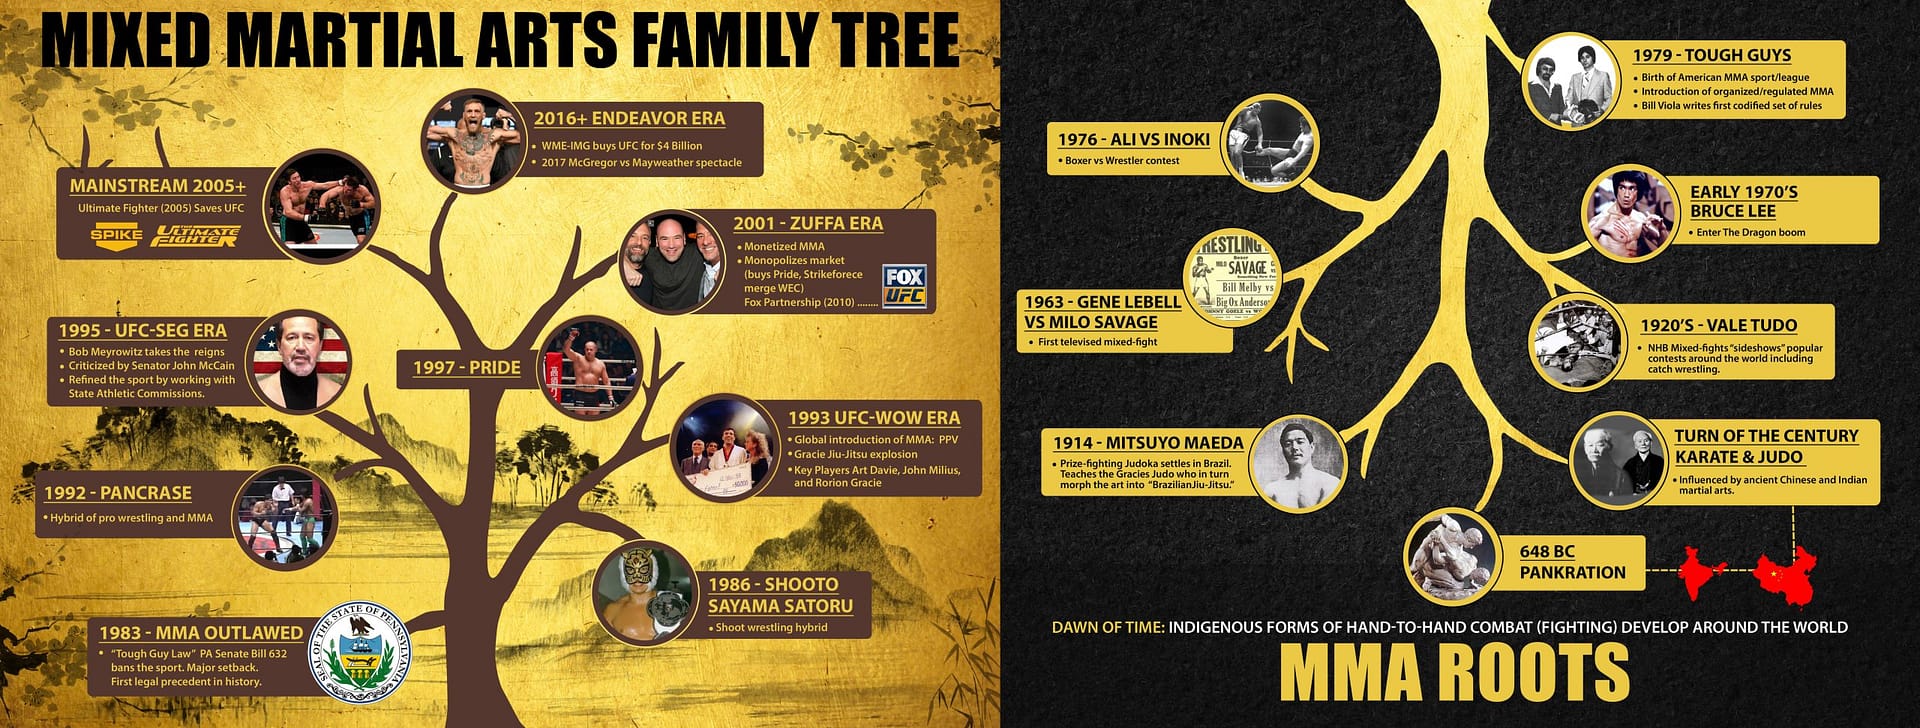 Mixed Martial Arts Family Tree